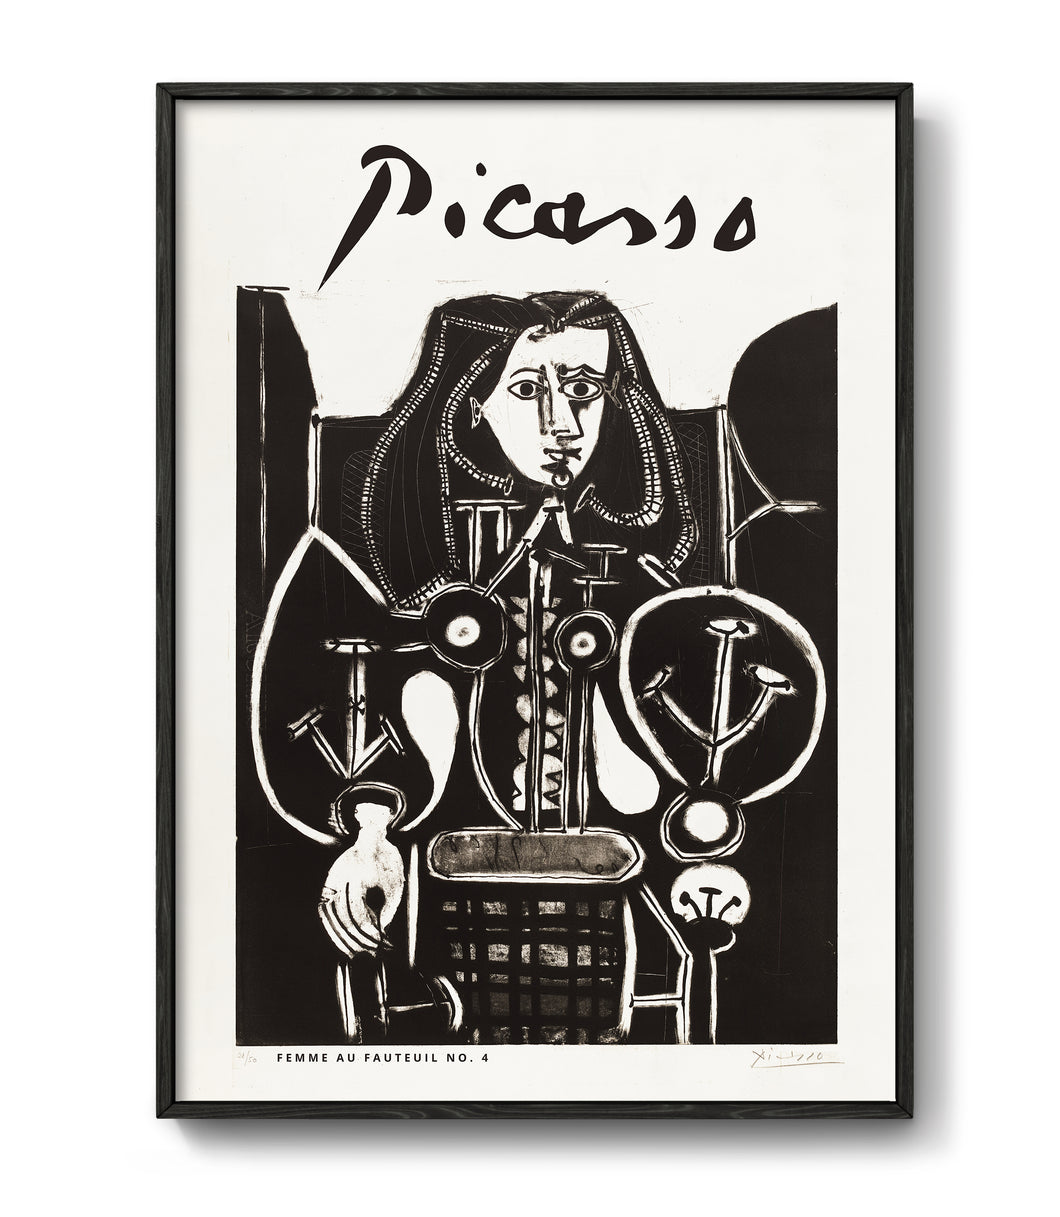 Femme au fauteuil No. 4 by Picasso